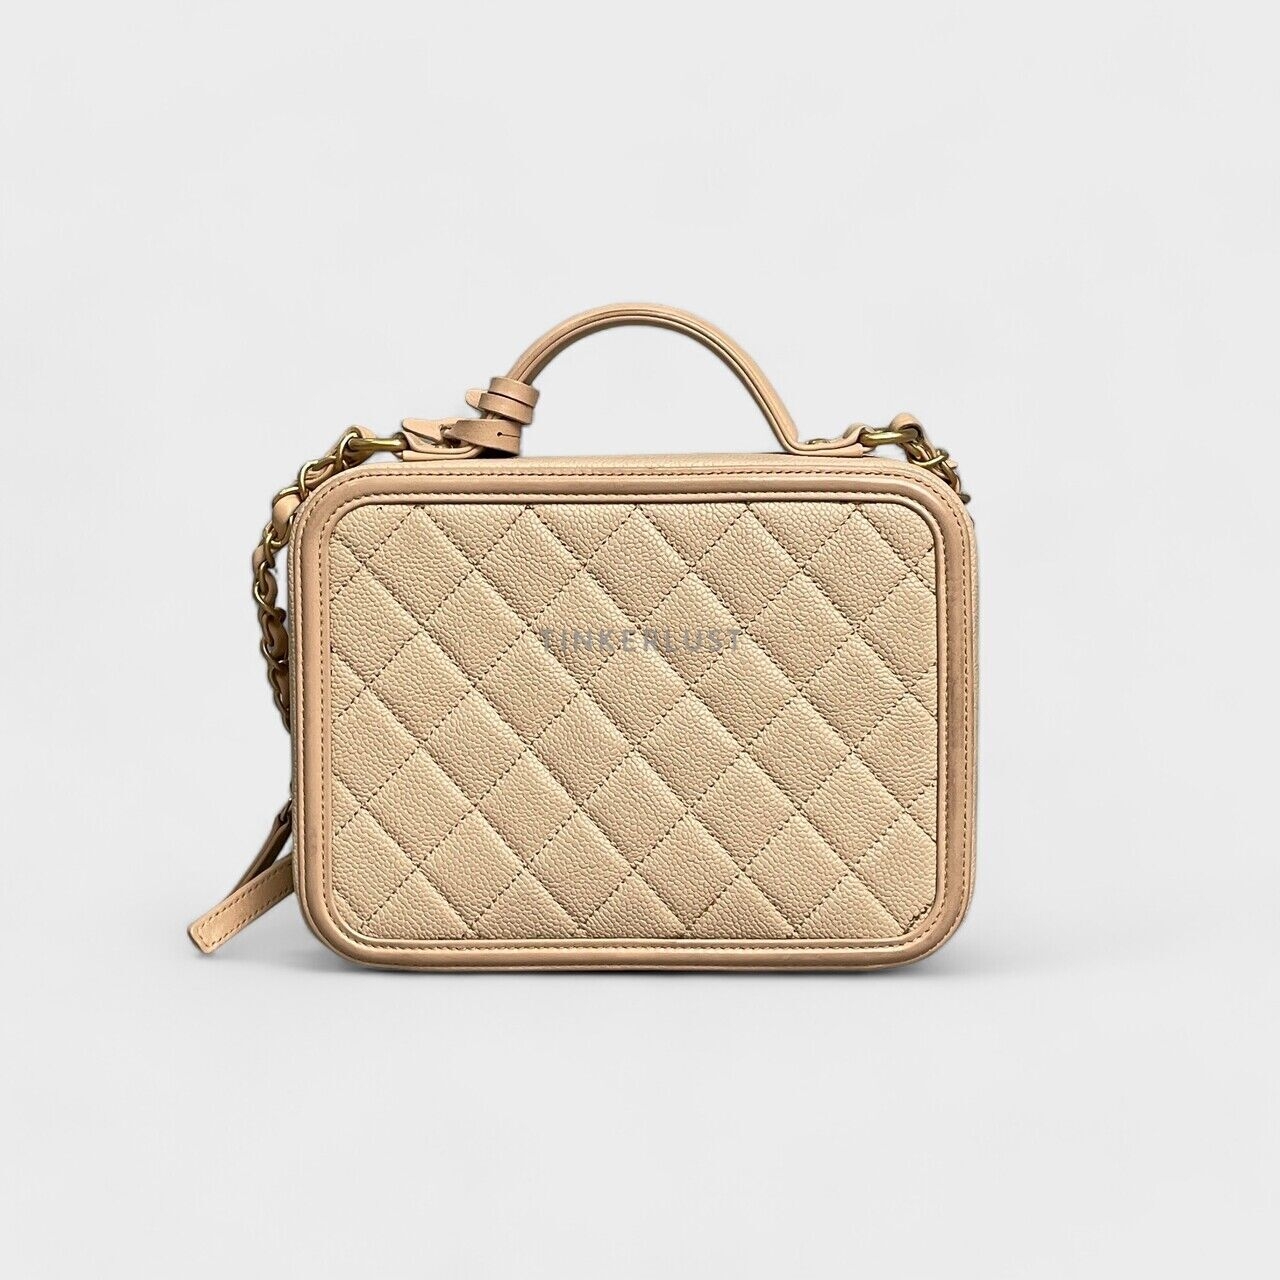 Chanel Vanity Medium Nude Caviar Case Bag 